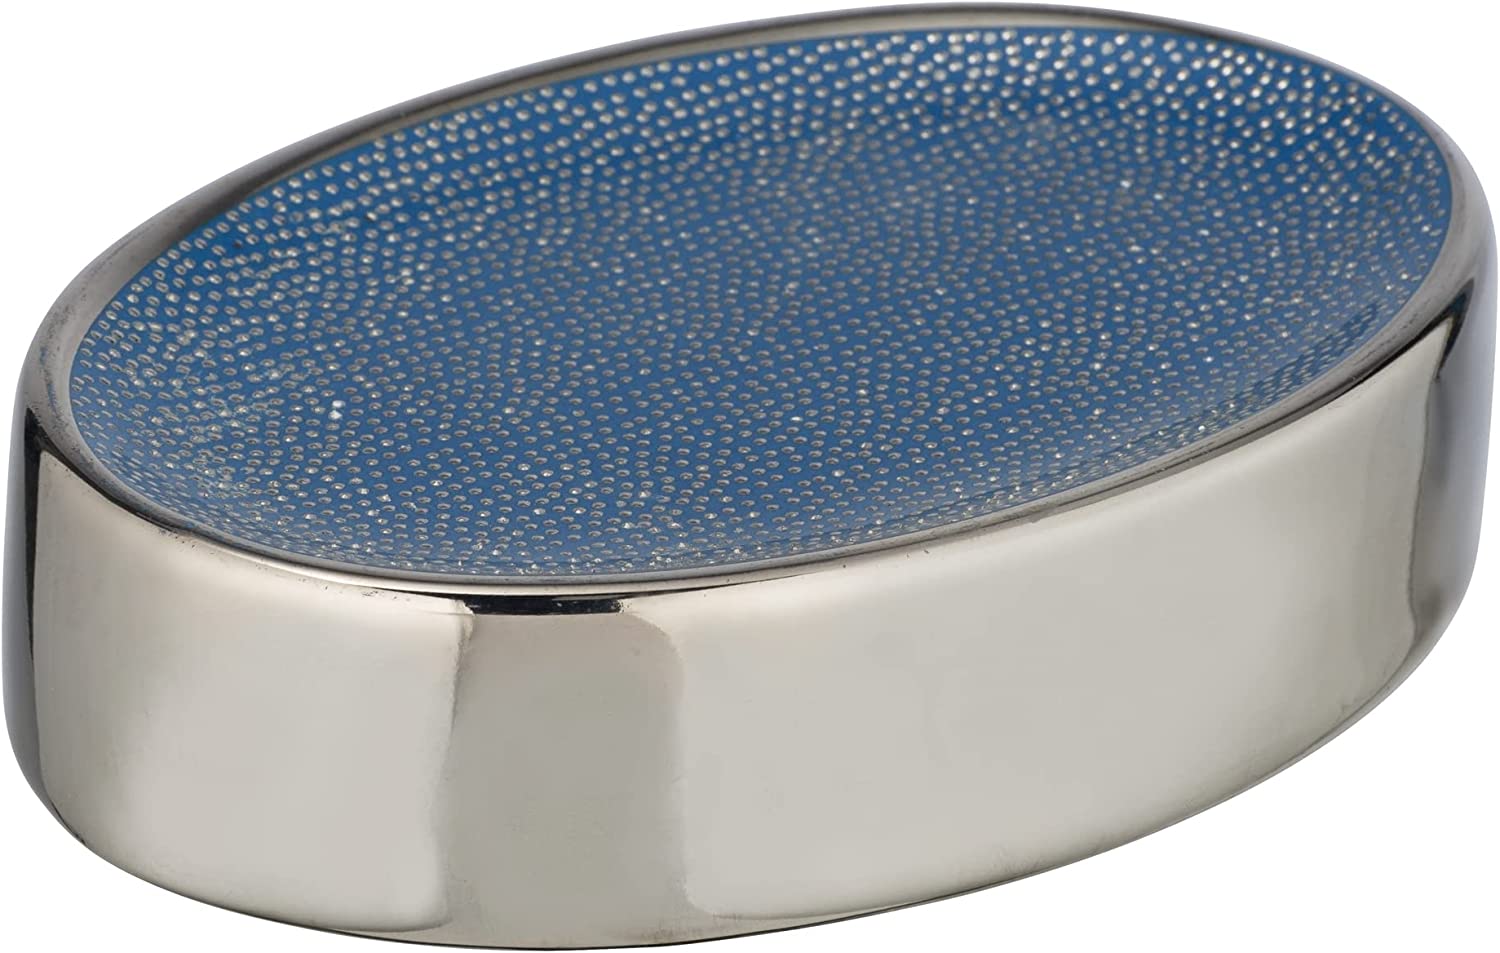 Seifenablage Nuria, Seifenschale zur Aufbewahrung von Handseife aus hochwertiger Keramik mit luxuriös-strukturierter Oberfläche in Silber/Blau, 12 x 3 x 8 cm